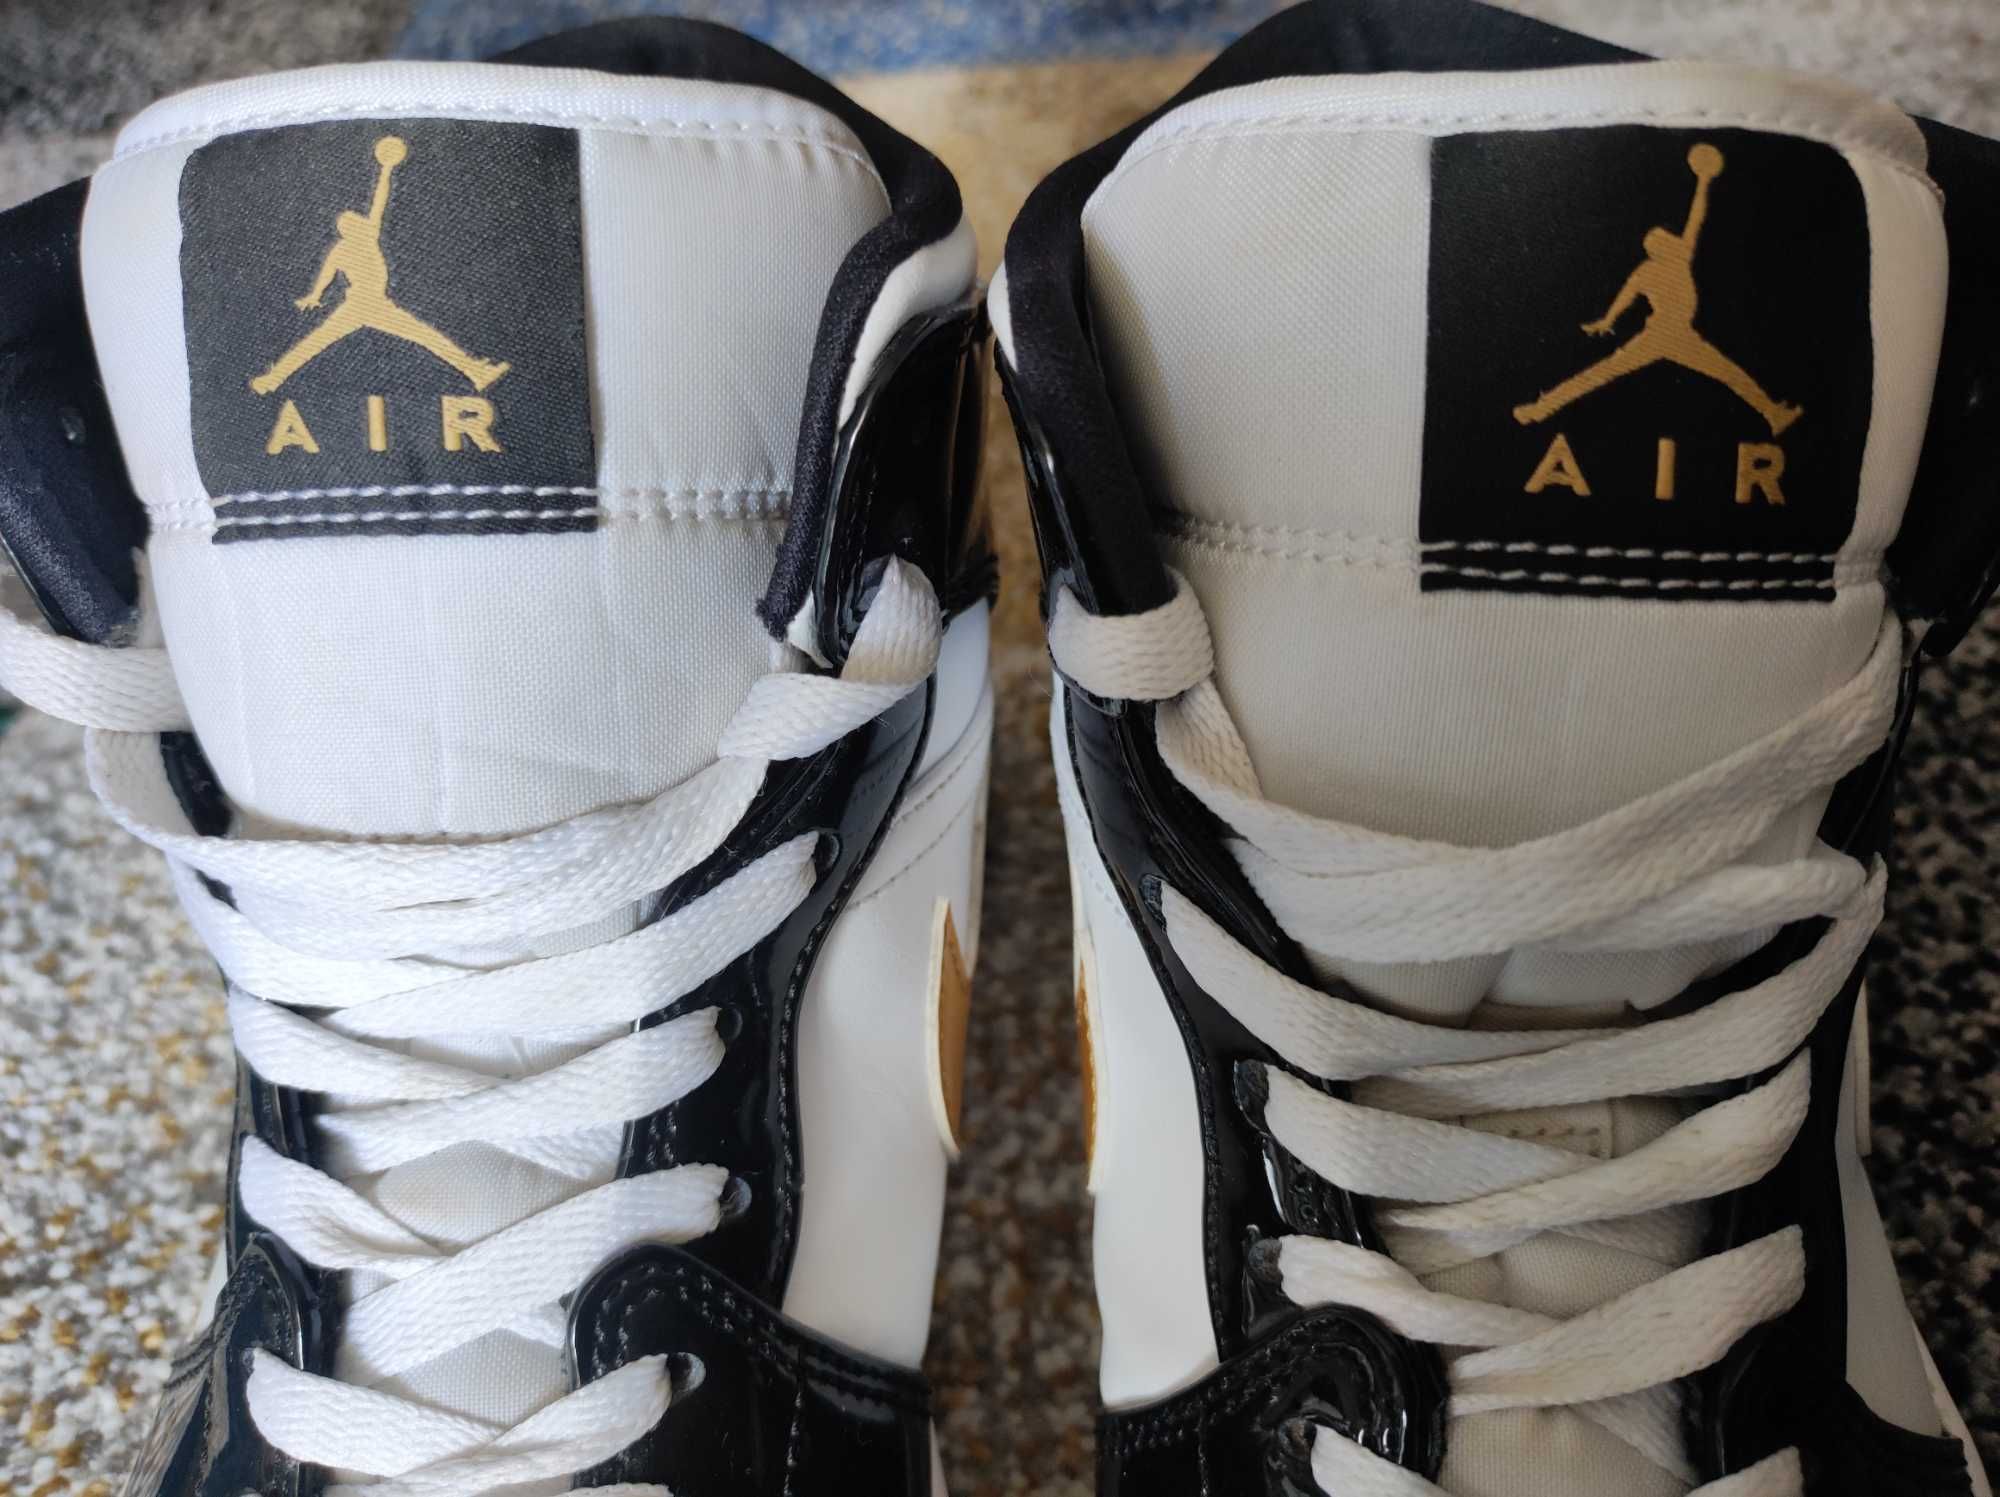 Nike Air Jordan buty do koszykówki rozm. 43